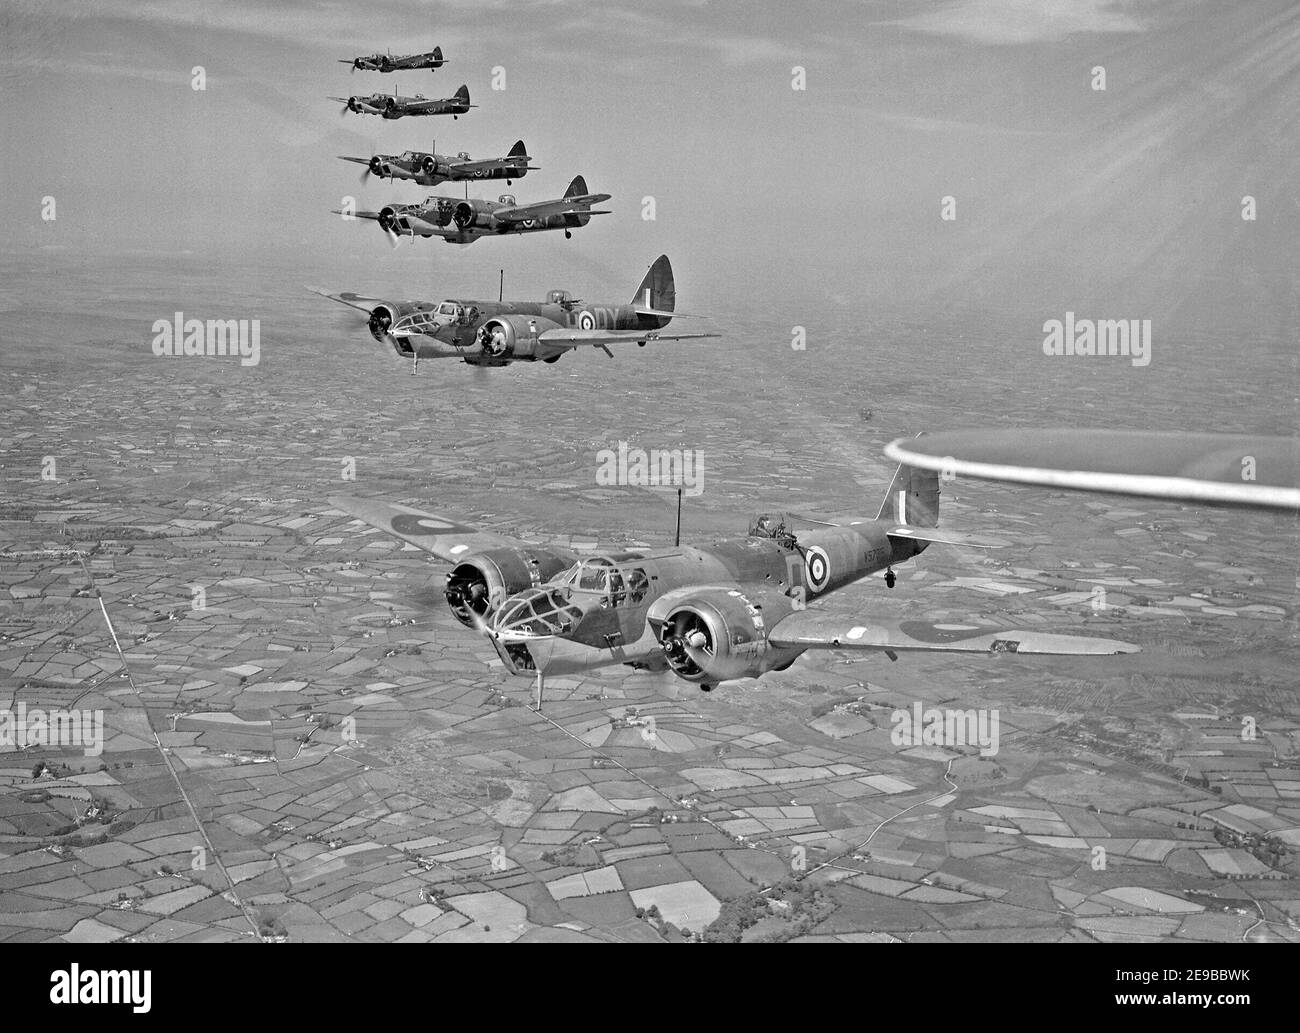 Bristol Blenheim Mk IVF de l'escadron n° 254 RAF volant d'Aldergrove en Irlande du Nord, mai 1941. Six FIV de Blenheim Mark de l'escadron no 254 RAF, volant en formation au-dessus de l'Irlande du Nord peu après l'arrivée de units à Aldergrove, comté d'Antrim, 1941 Banque D'Images